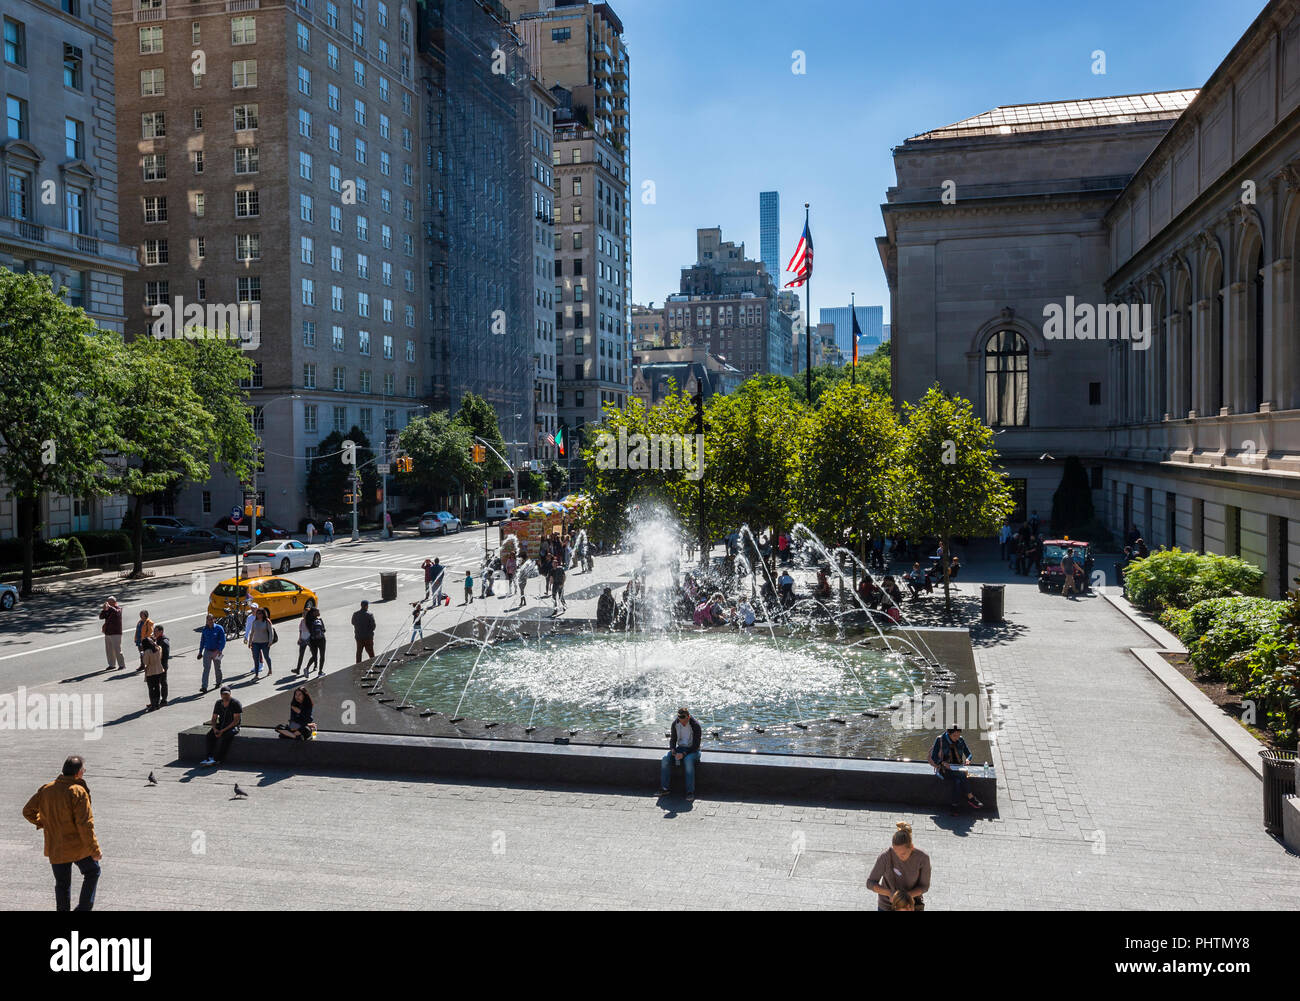 Fontaine d'eau en face du Metropolitan Museum of Art, David Koch Plaza, New York City Banque D'Images